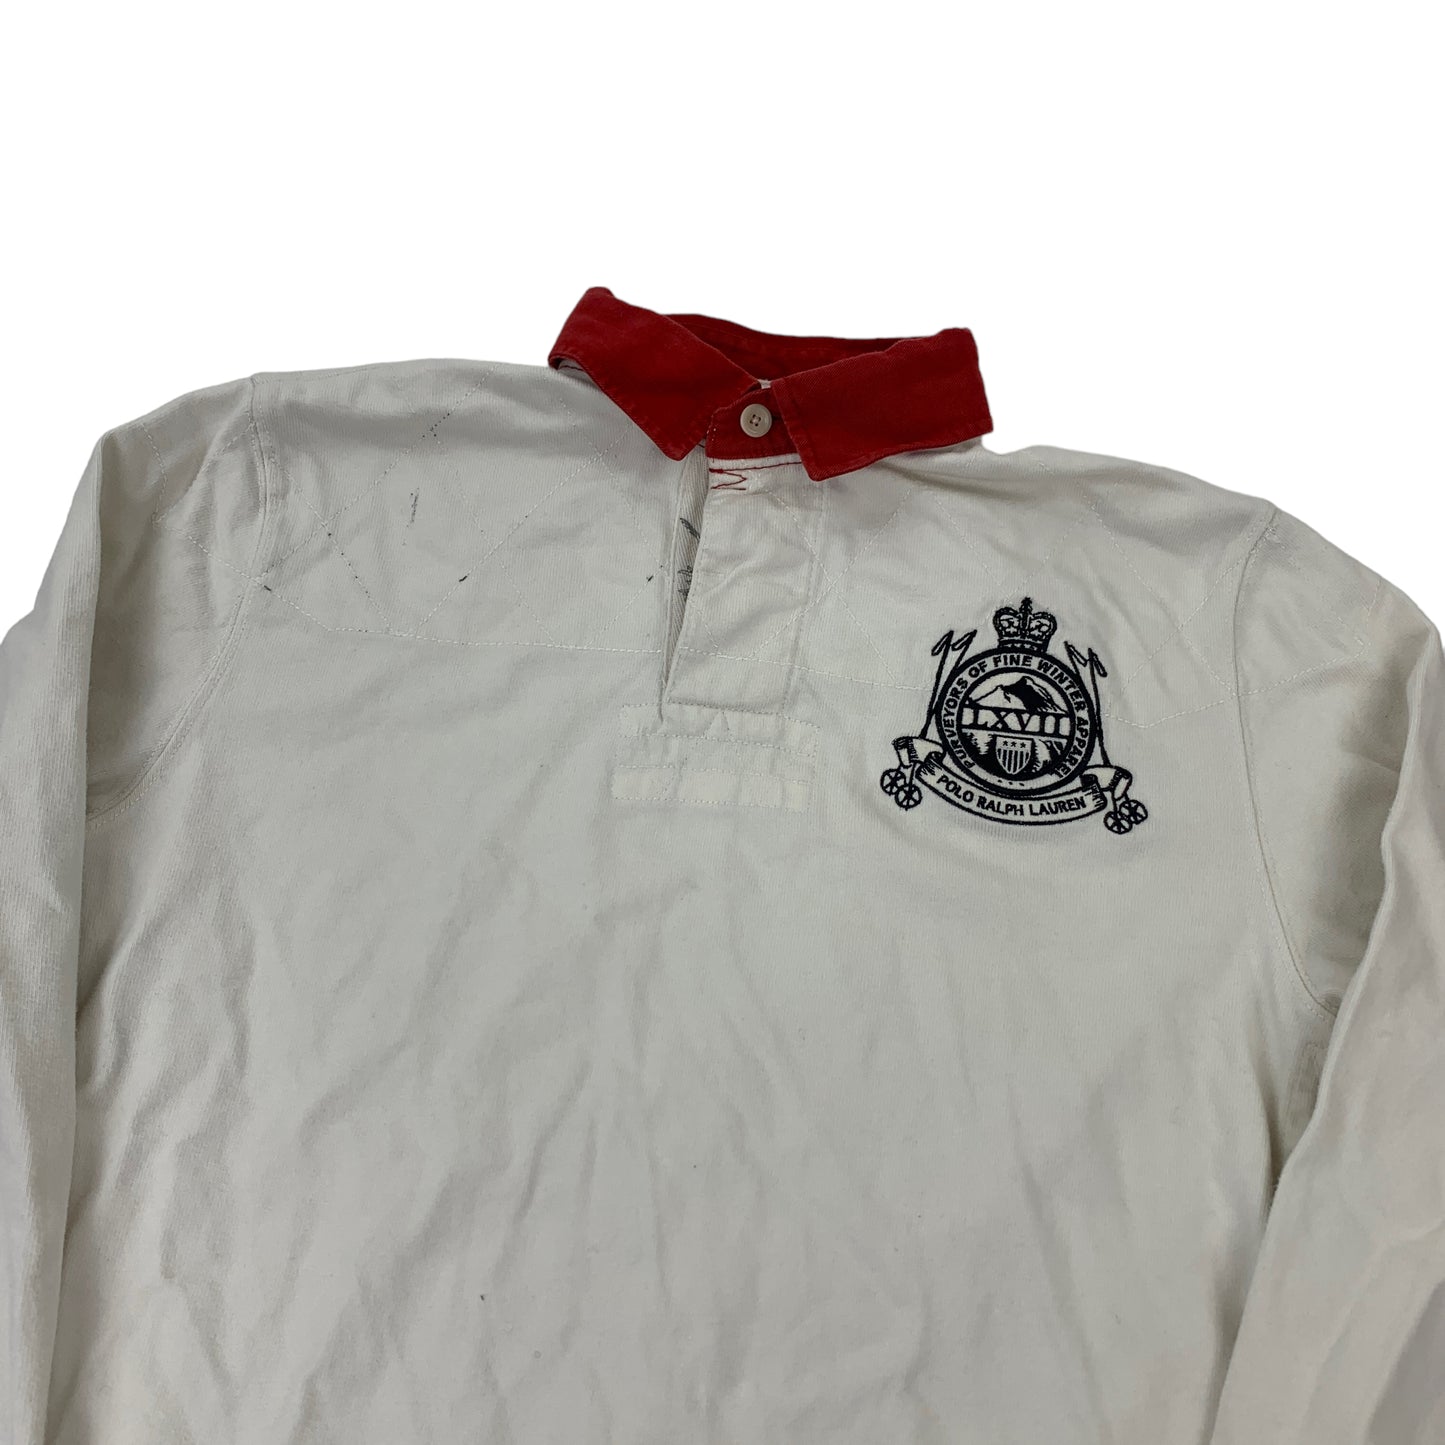 Ralph Lauren Longsleeve Polo Shirt - L